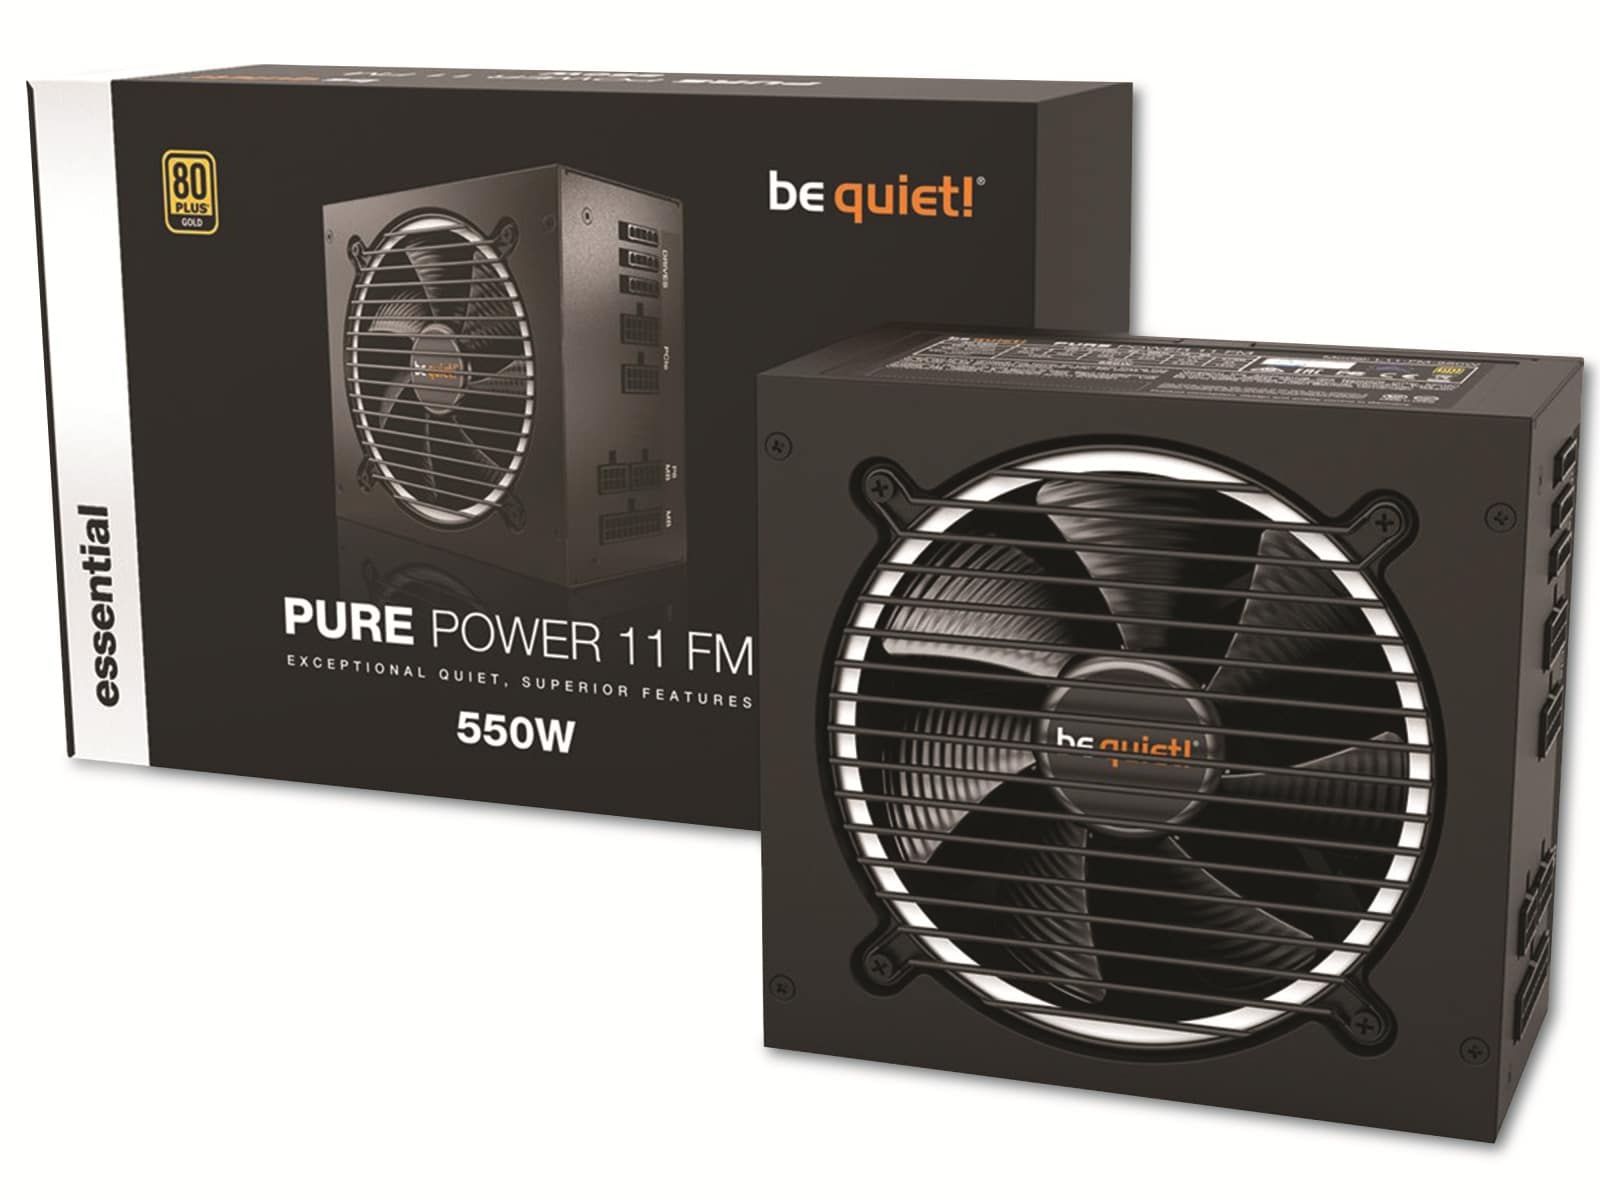  BE QUIET! PC-Netzteil Pure Power 11 FM, 550W, 80+ Gold, Kabelmanagement